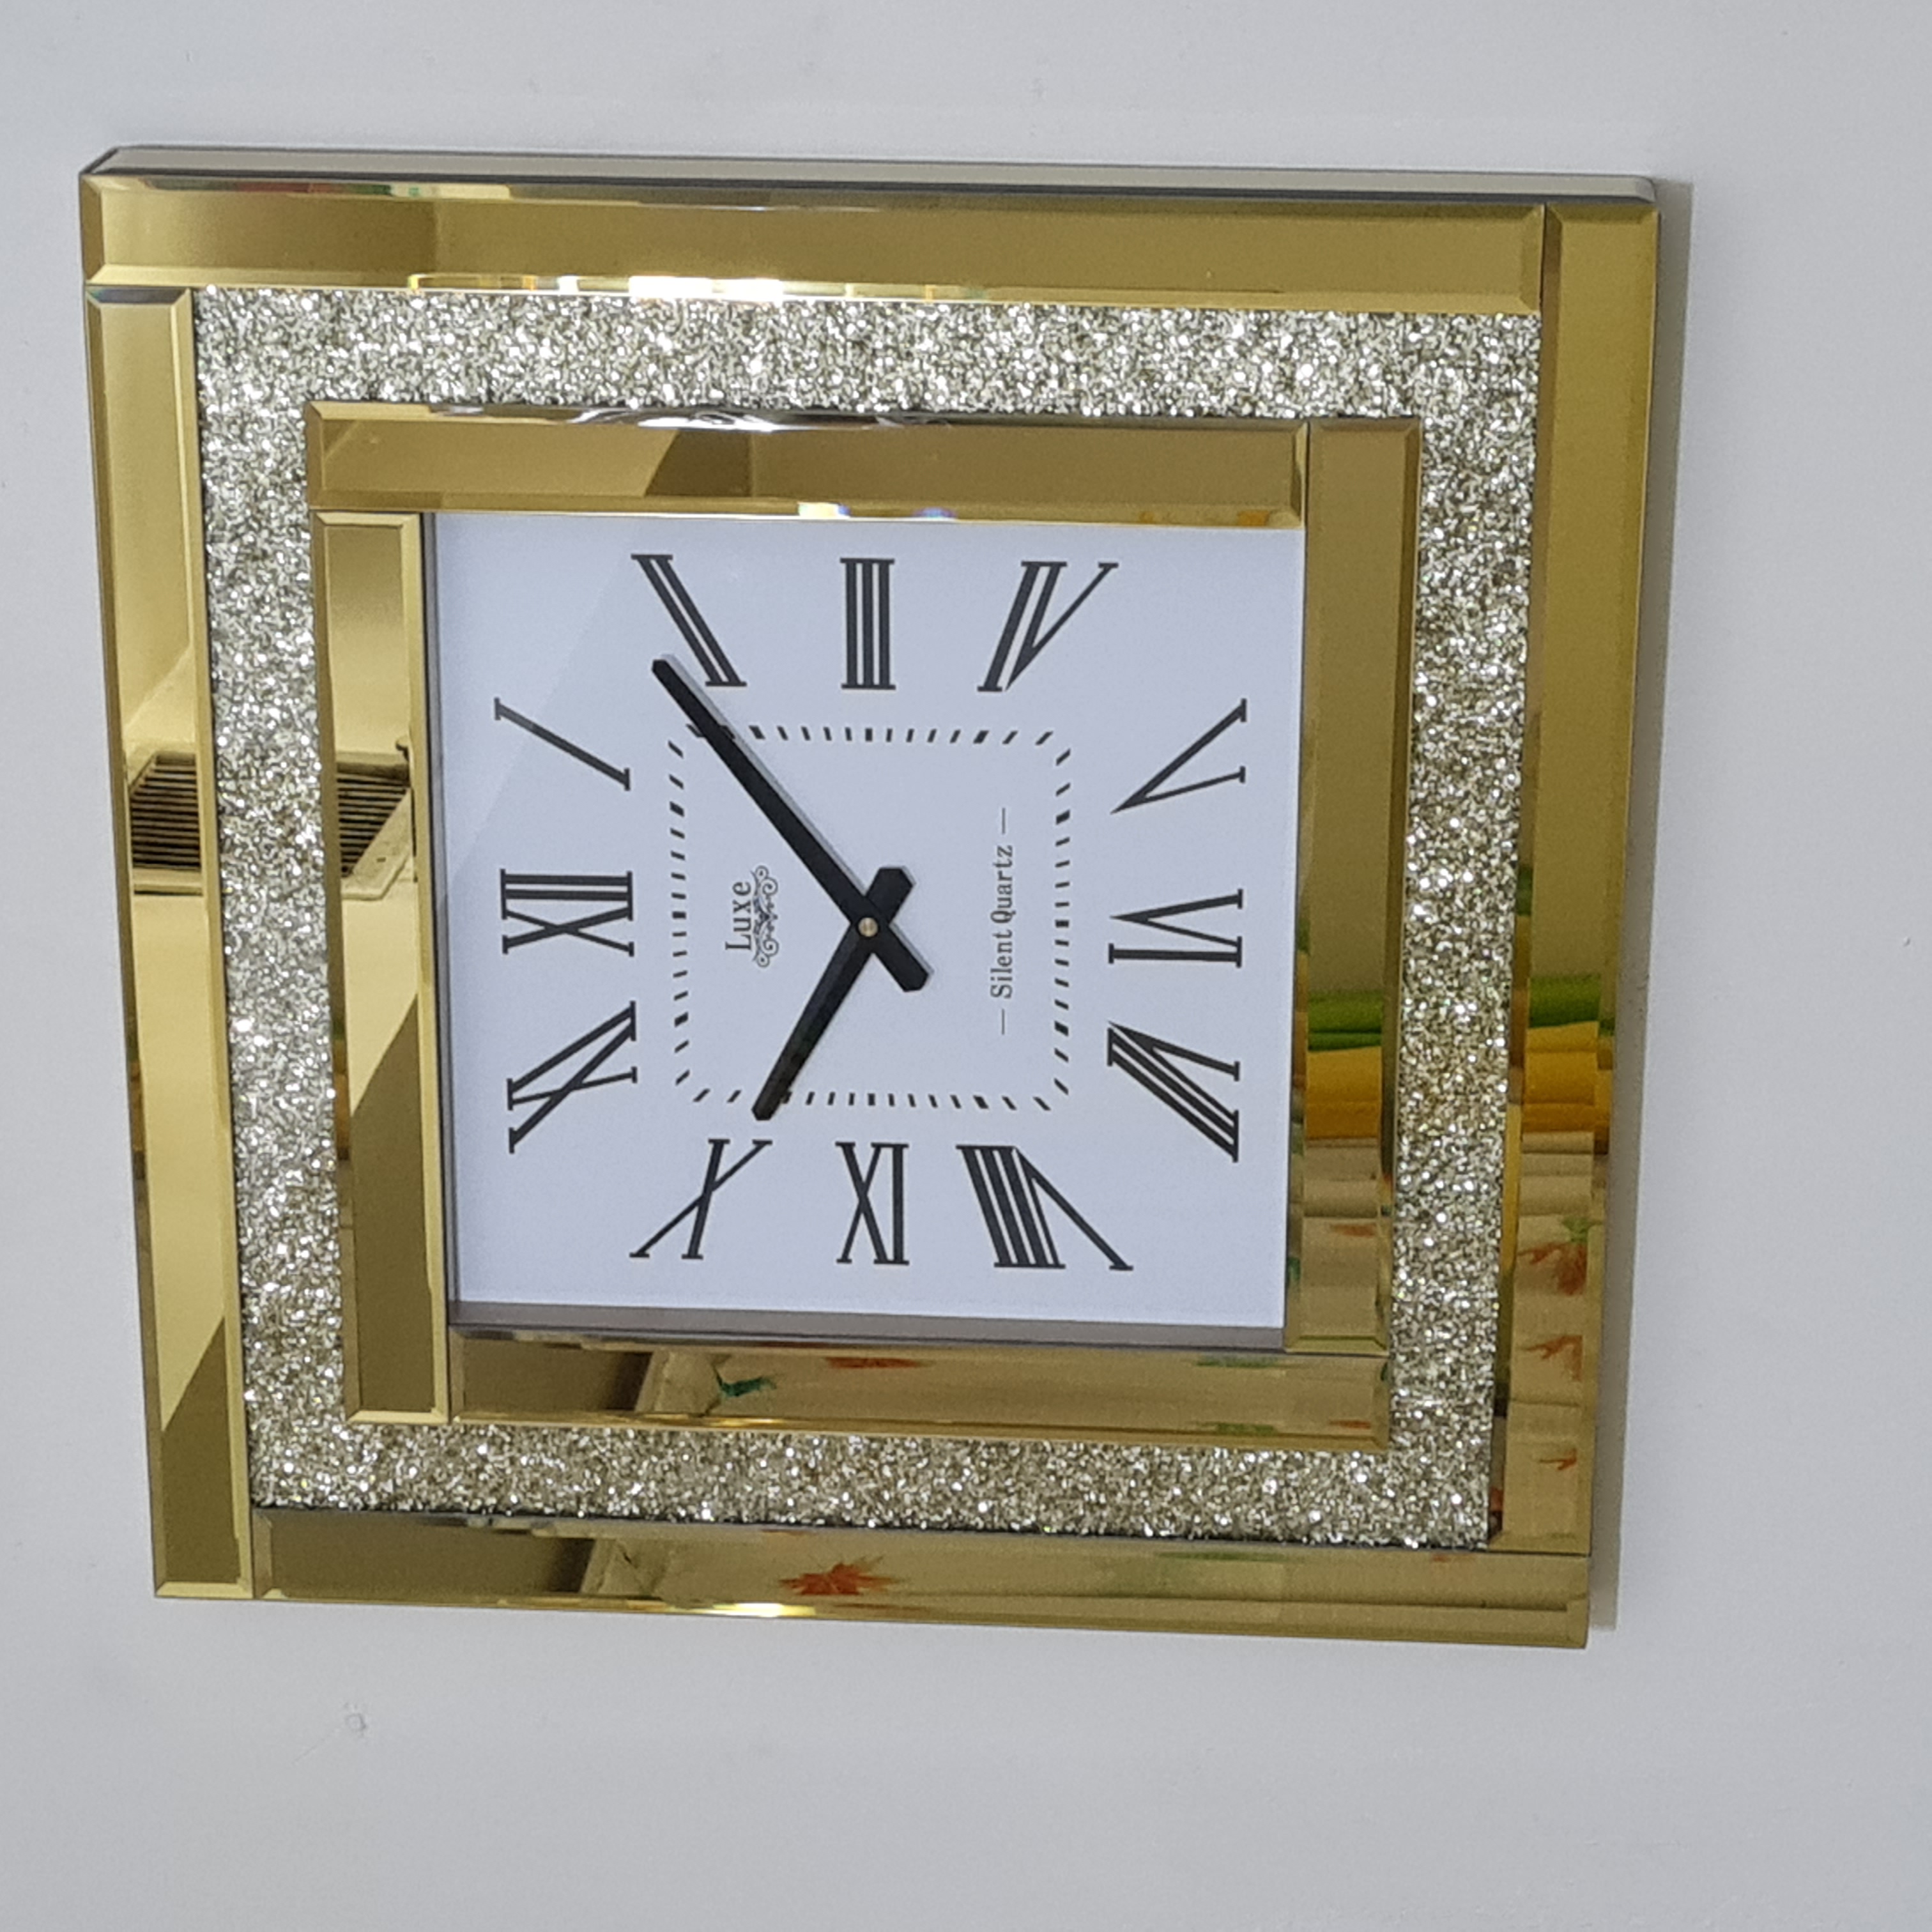 ساعت دیواری آینه ای نگین دار مربع مدل پینار لوکس بسیار زیبا و جذاب در دو رنگ مختلف برنز و نقره ای قطر 60 سانت